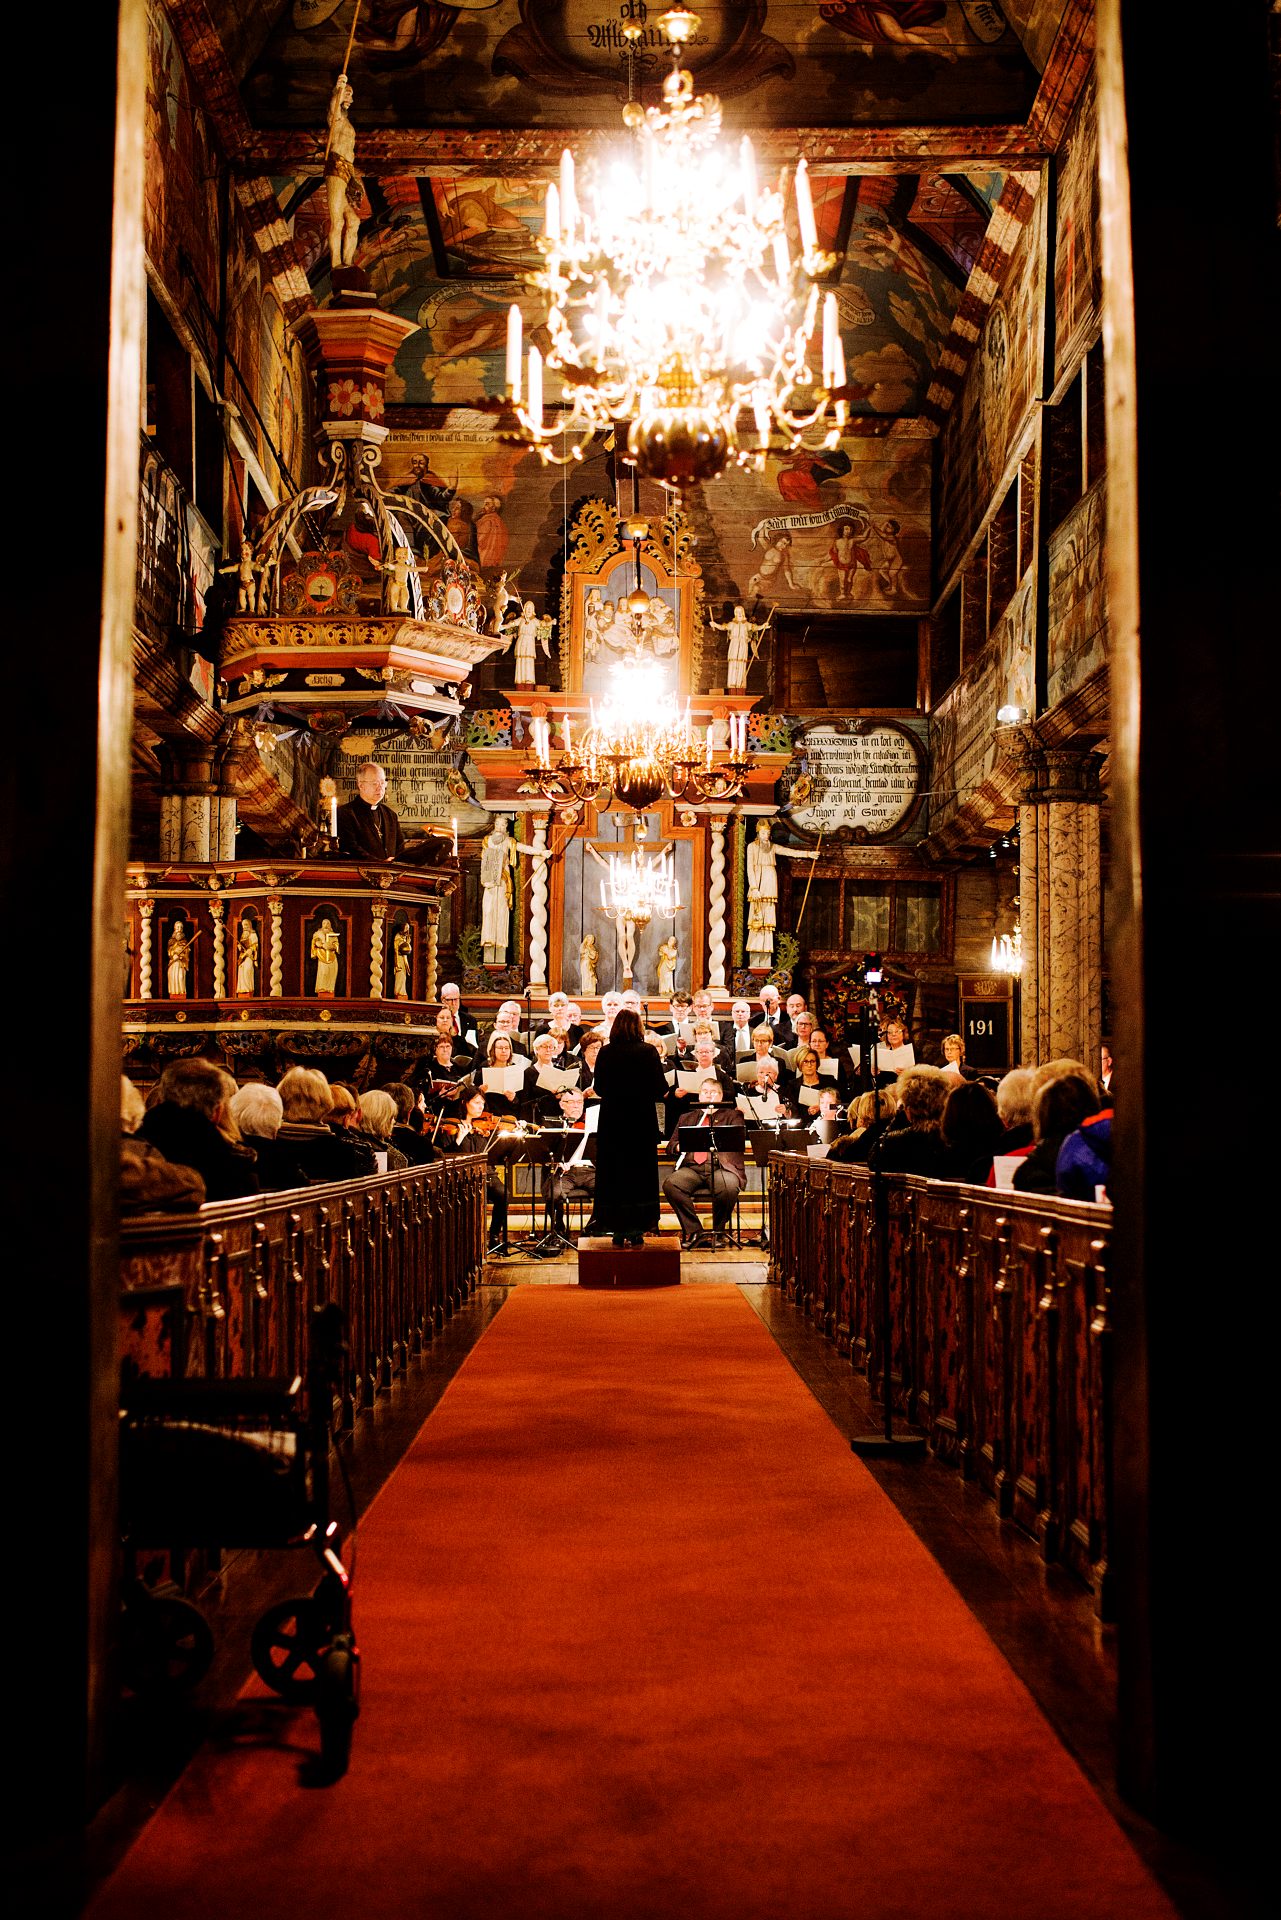 Orkester spelar i en kyrka